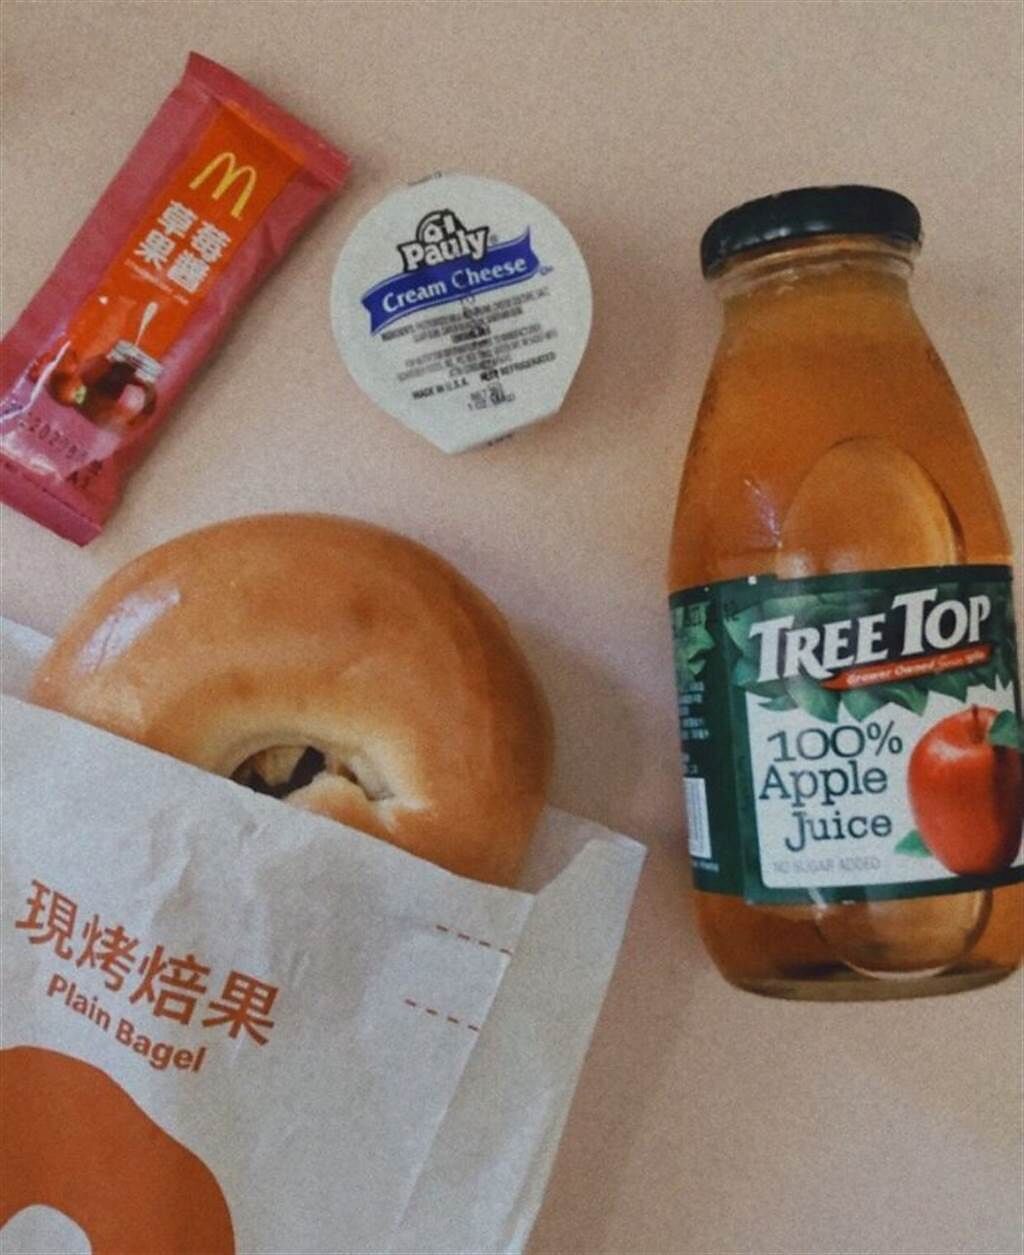 一名網友分享麥當勞期間限定早餐，夾附贈的乳酪抹醬超好吃。(翻攝自Dcard)